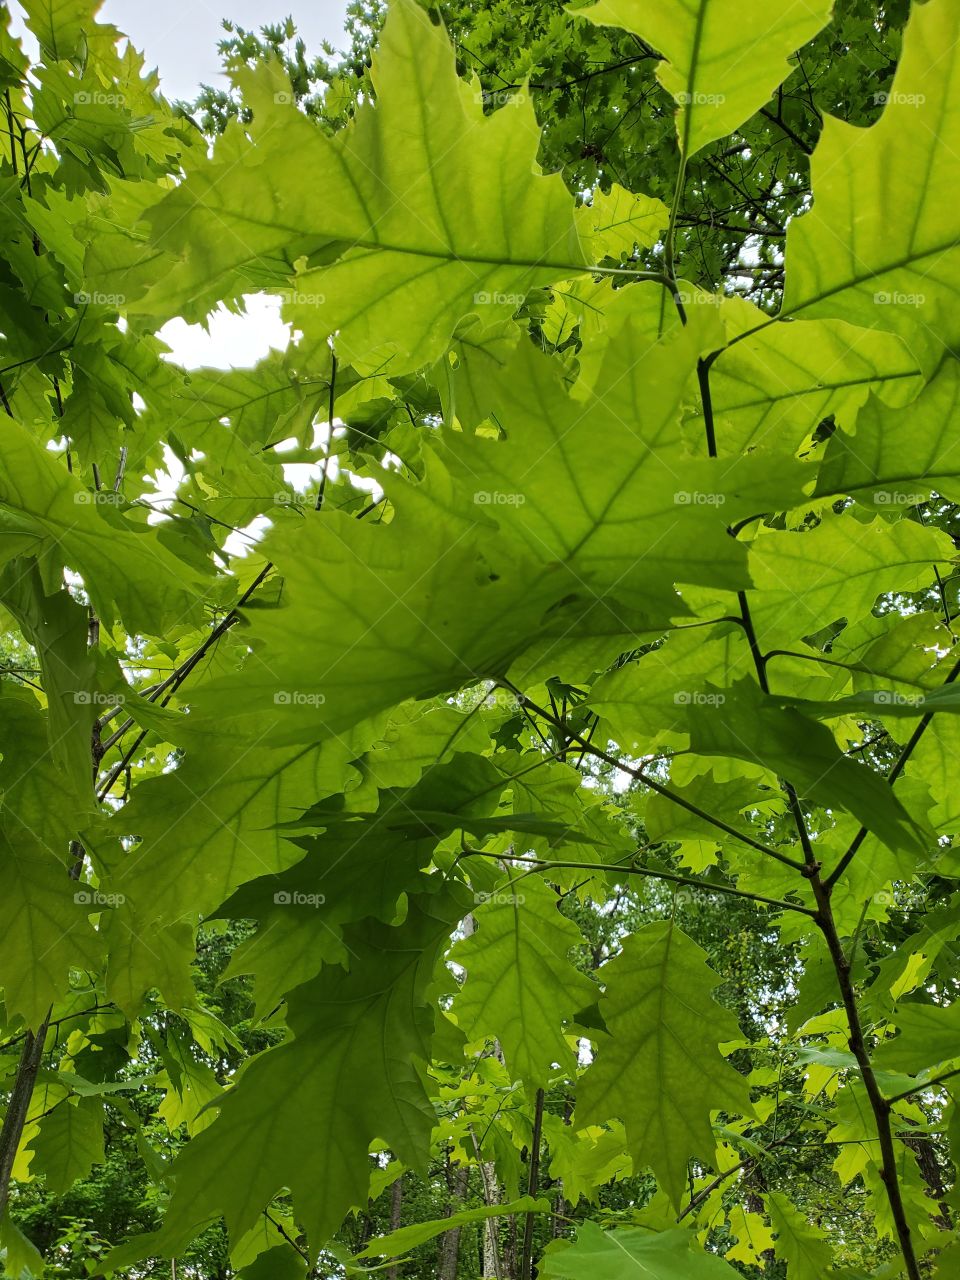 green leafs summer